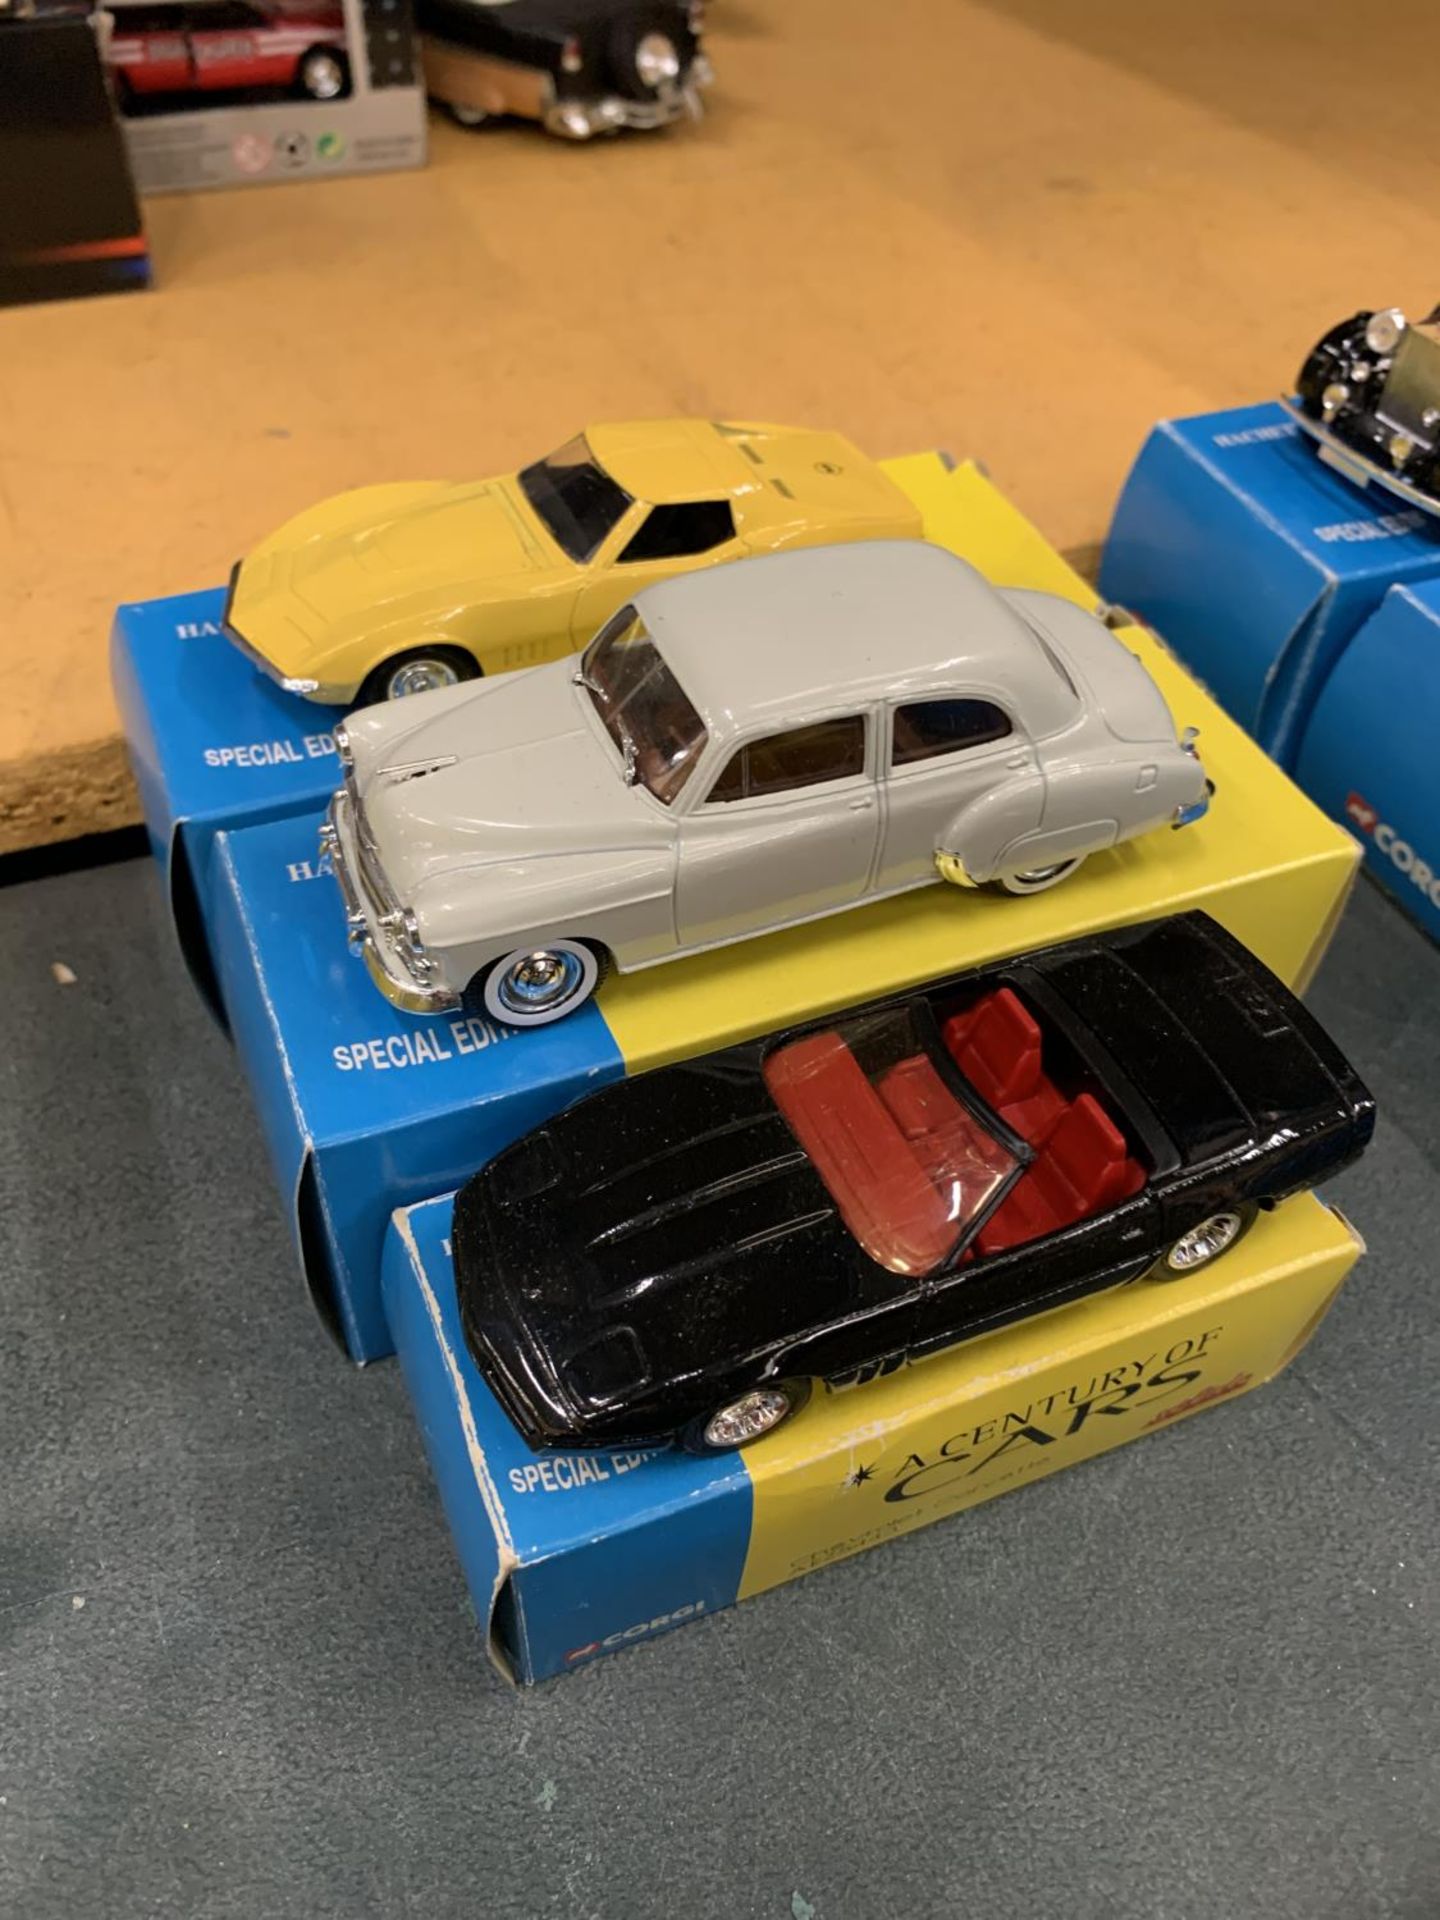 THREE BOXED CORGI 'A CENTURY OF CARS' TO INCLUDE A CHEVROLET CORVETTE, 1950, AND A CORVETTE JNI - Image 2 of 3